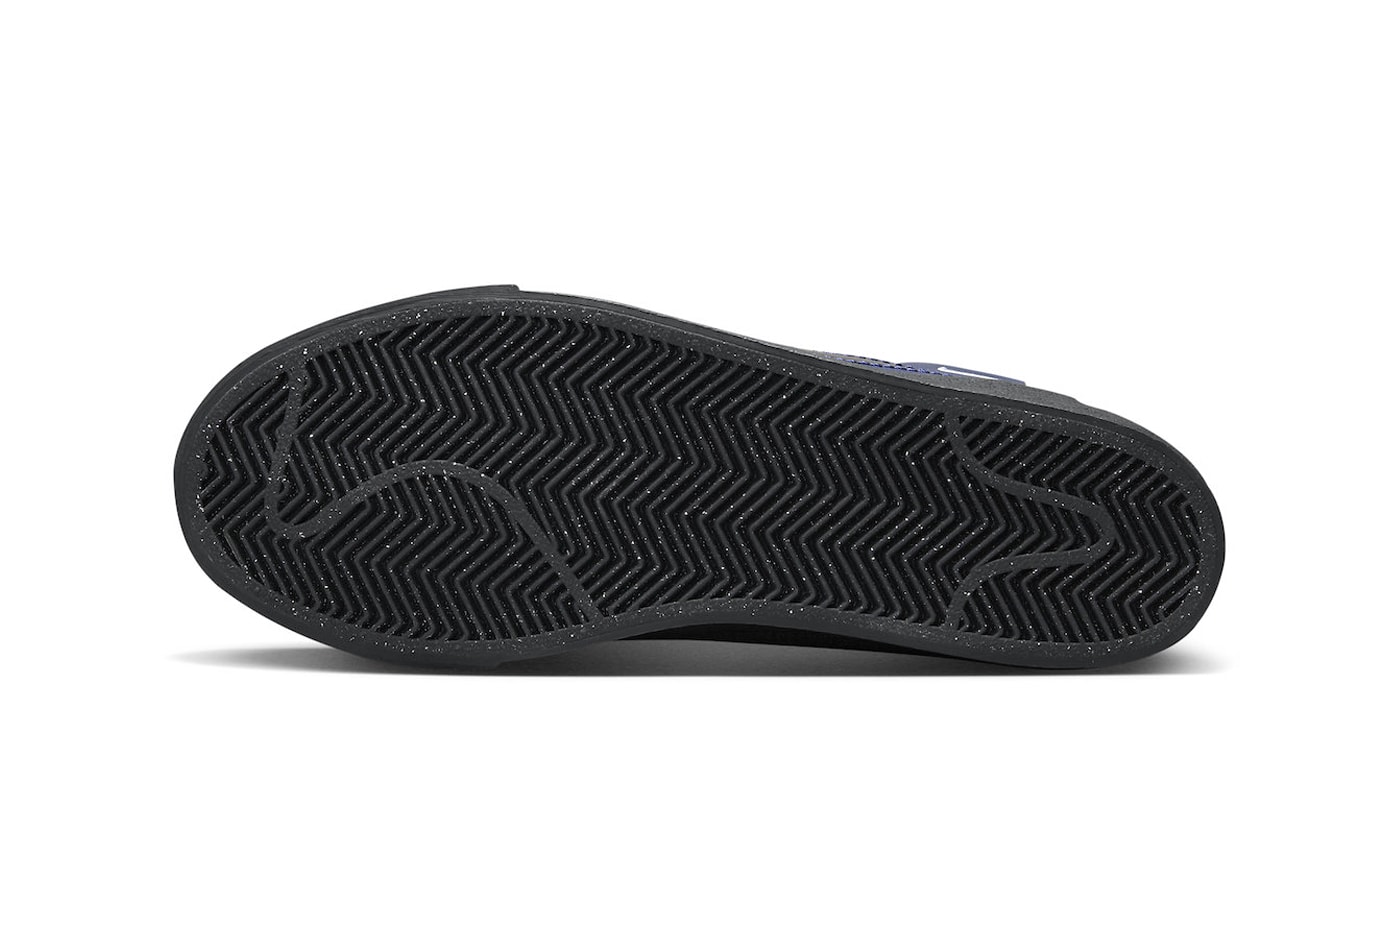 ナイキSBからパッチワーク風のデザインが特徴的なブレザー ミッド プレミアムが登場 Nike SB Blazer Mid Premium Navy Black FD5113-400 Release info 